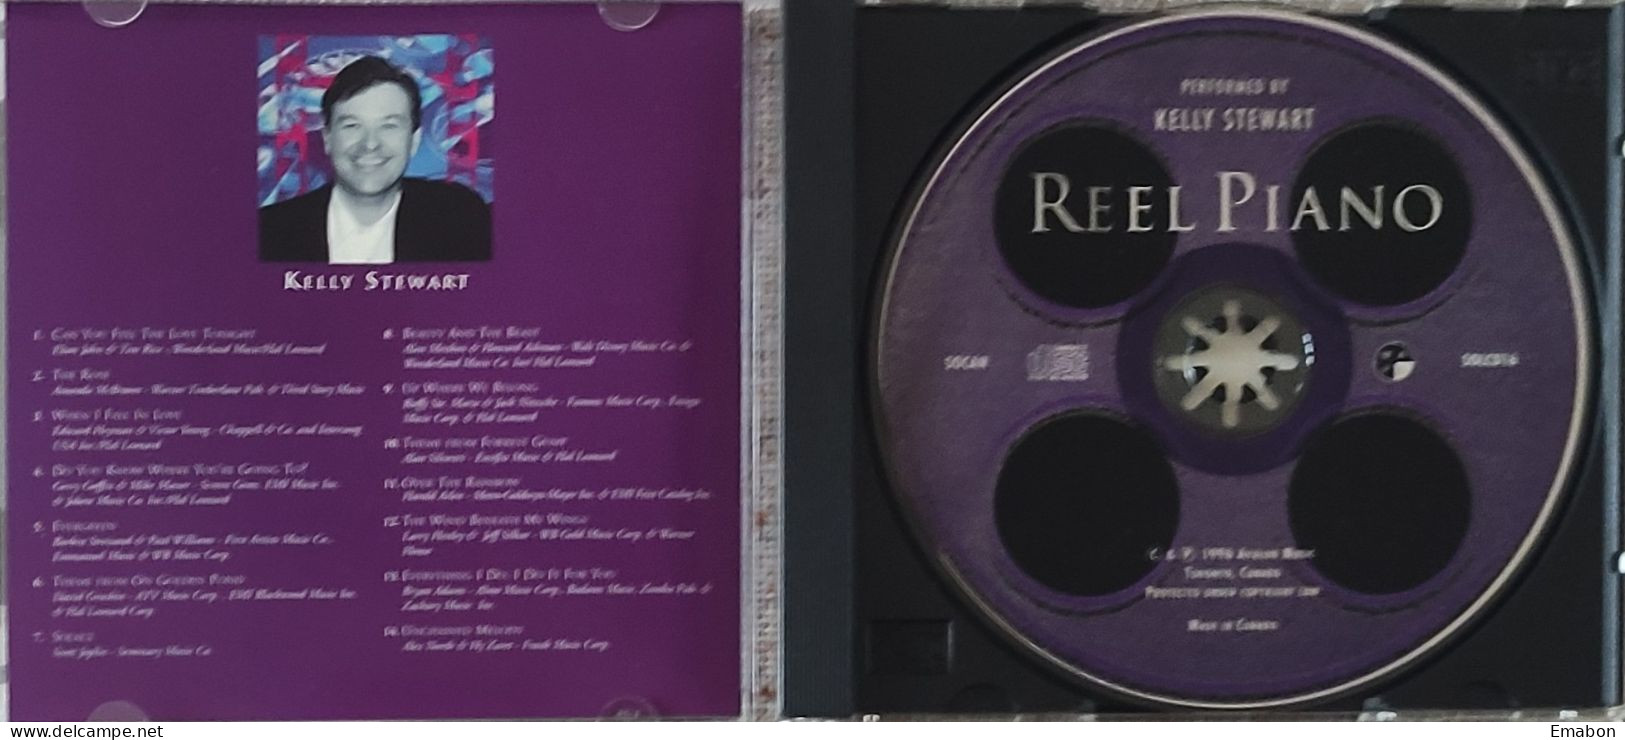 BORGATTA - FILM MUSIC  - Cd KELLY STEWART  - REEL PIANO - AVALON MUSIC 1996 - USATO In Buono Stato - Musica Di Film